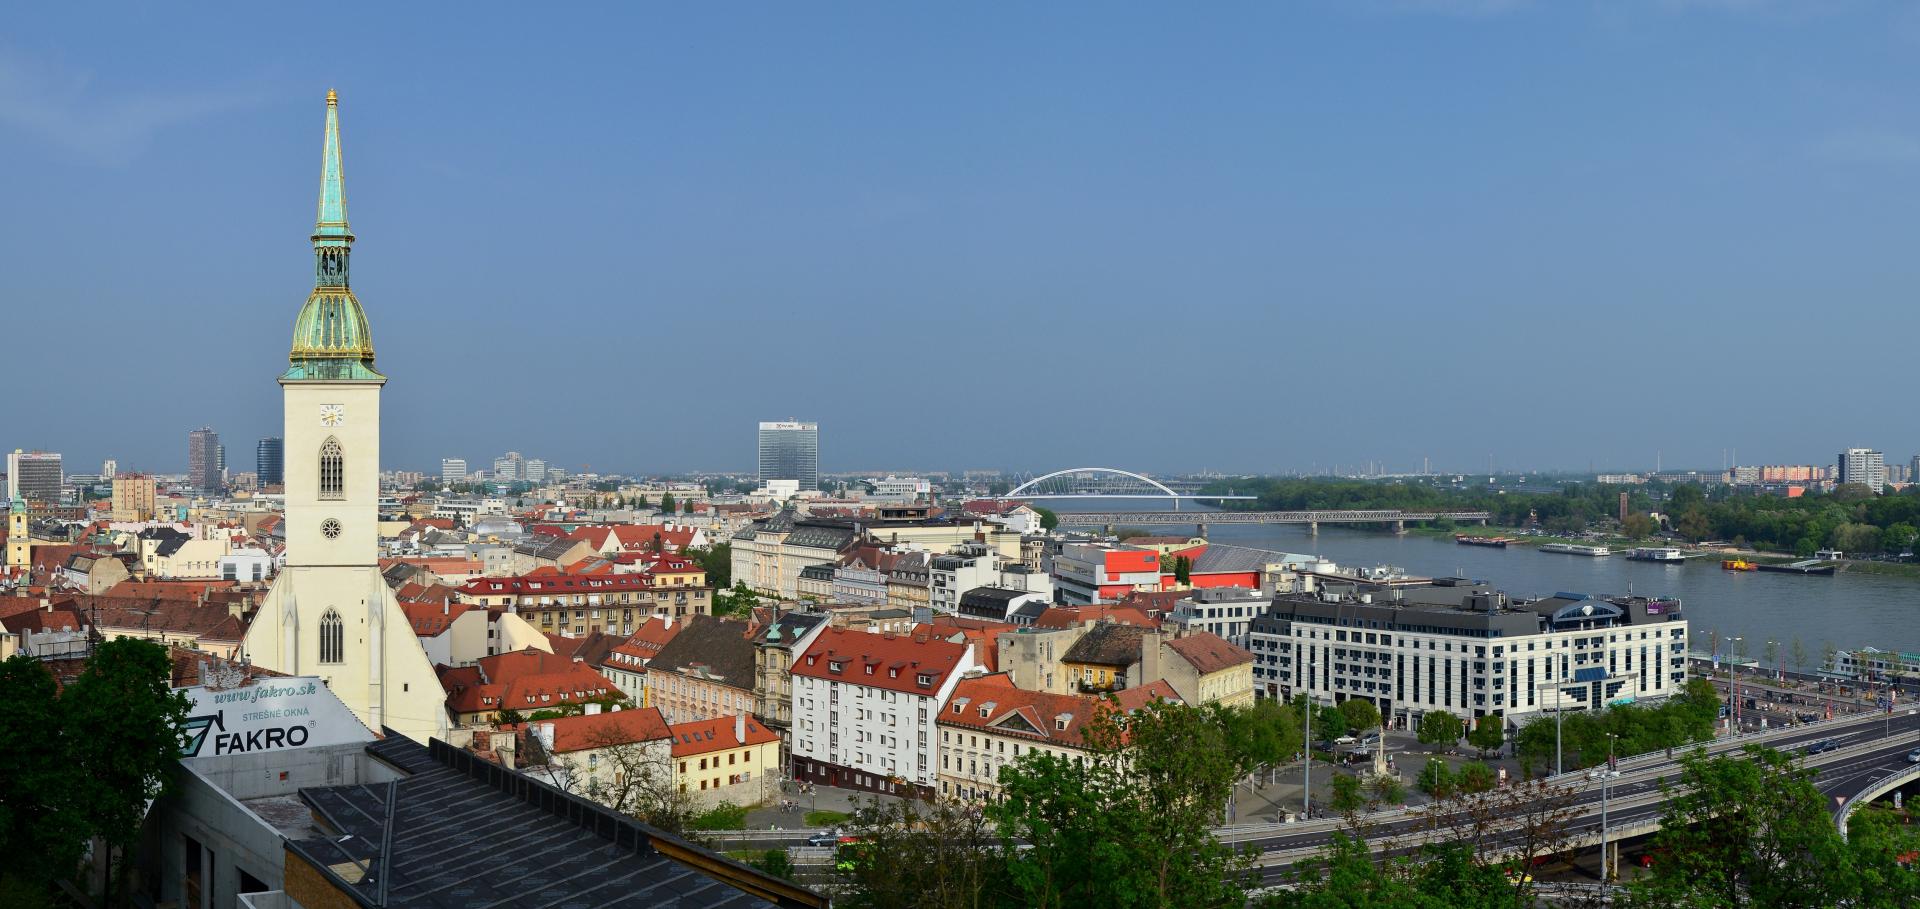 Realitný trh v Bratislave bude čeliť novej výzve. Projekt ponúkne študentom alternatívne bývanie